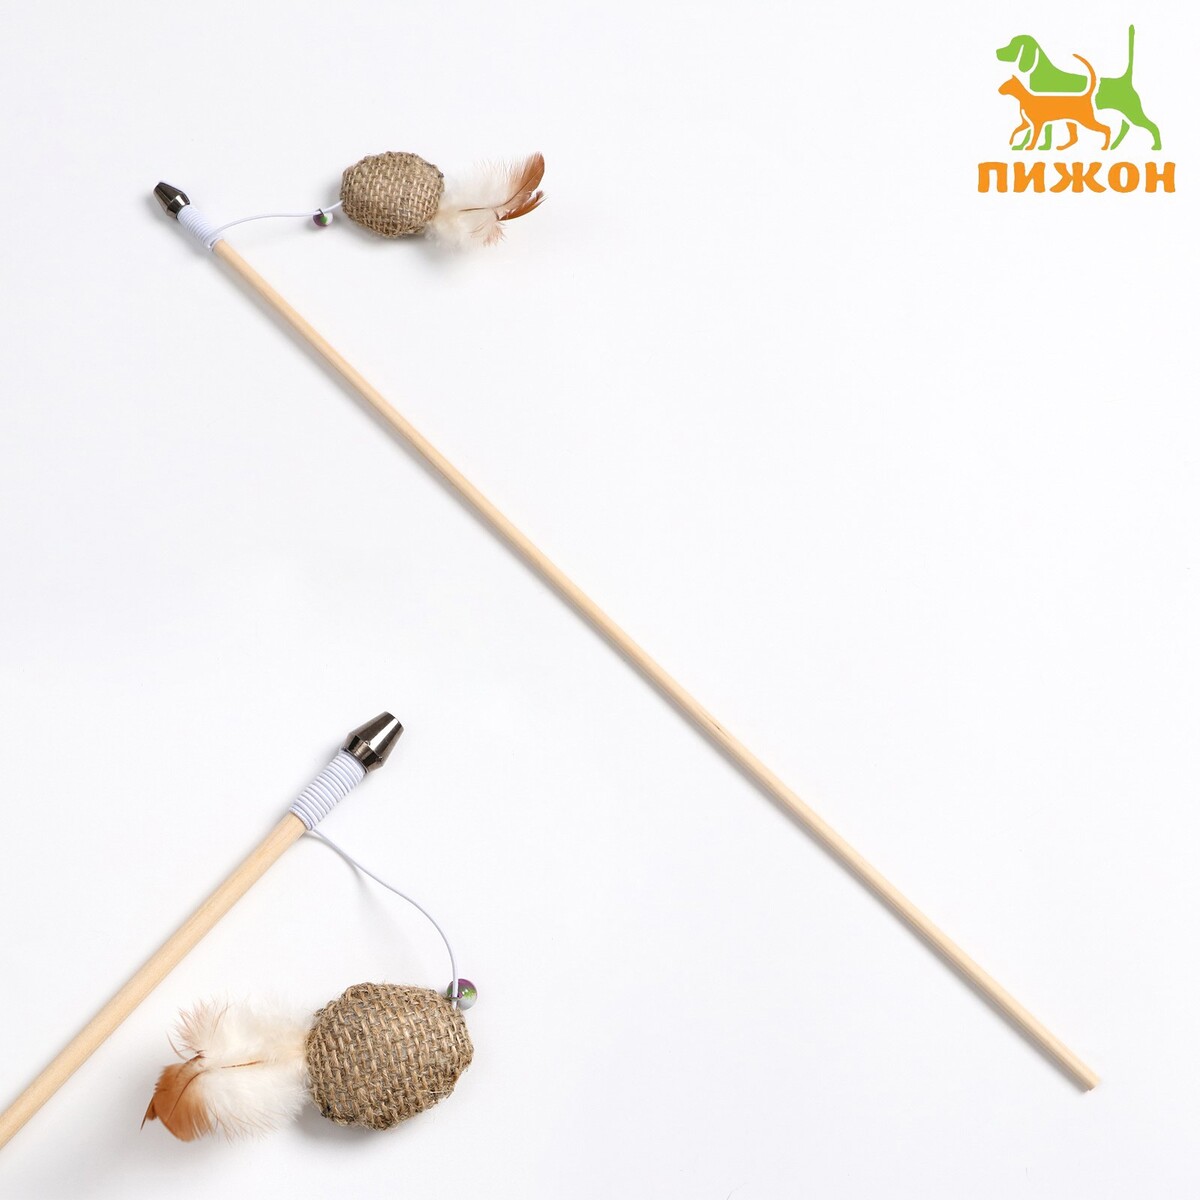 Дразнилка - удочка из эко-материалов дразнилка удочка с плетеным шариком и ными перьями на деревянной ручке оранжевый